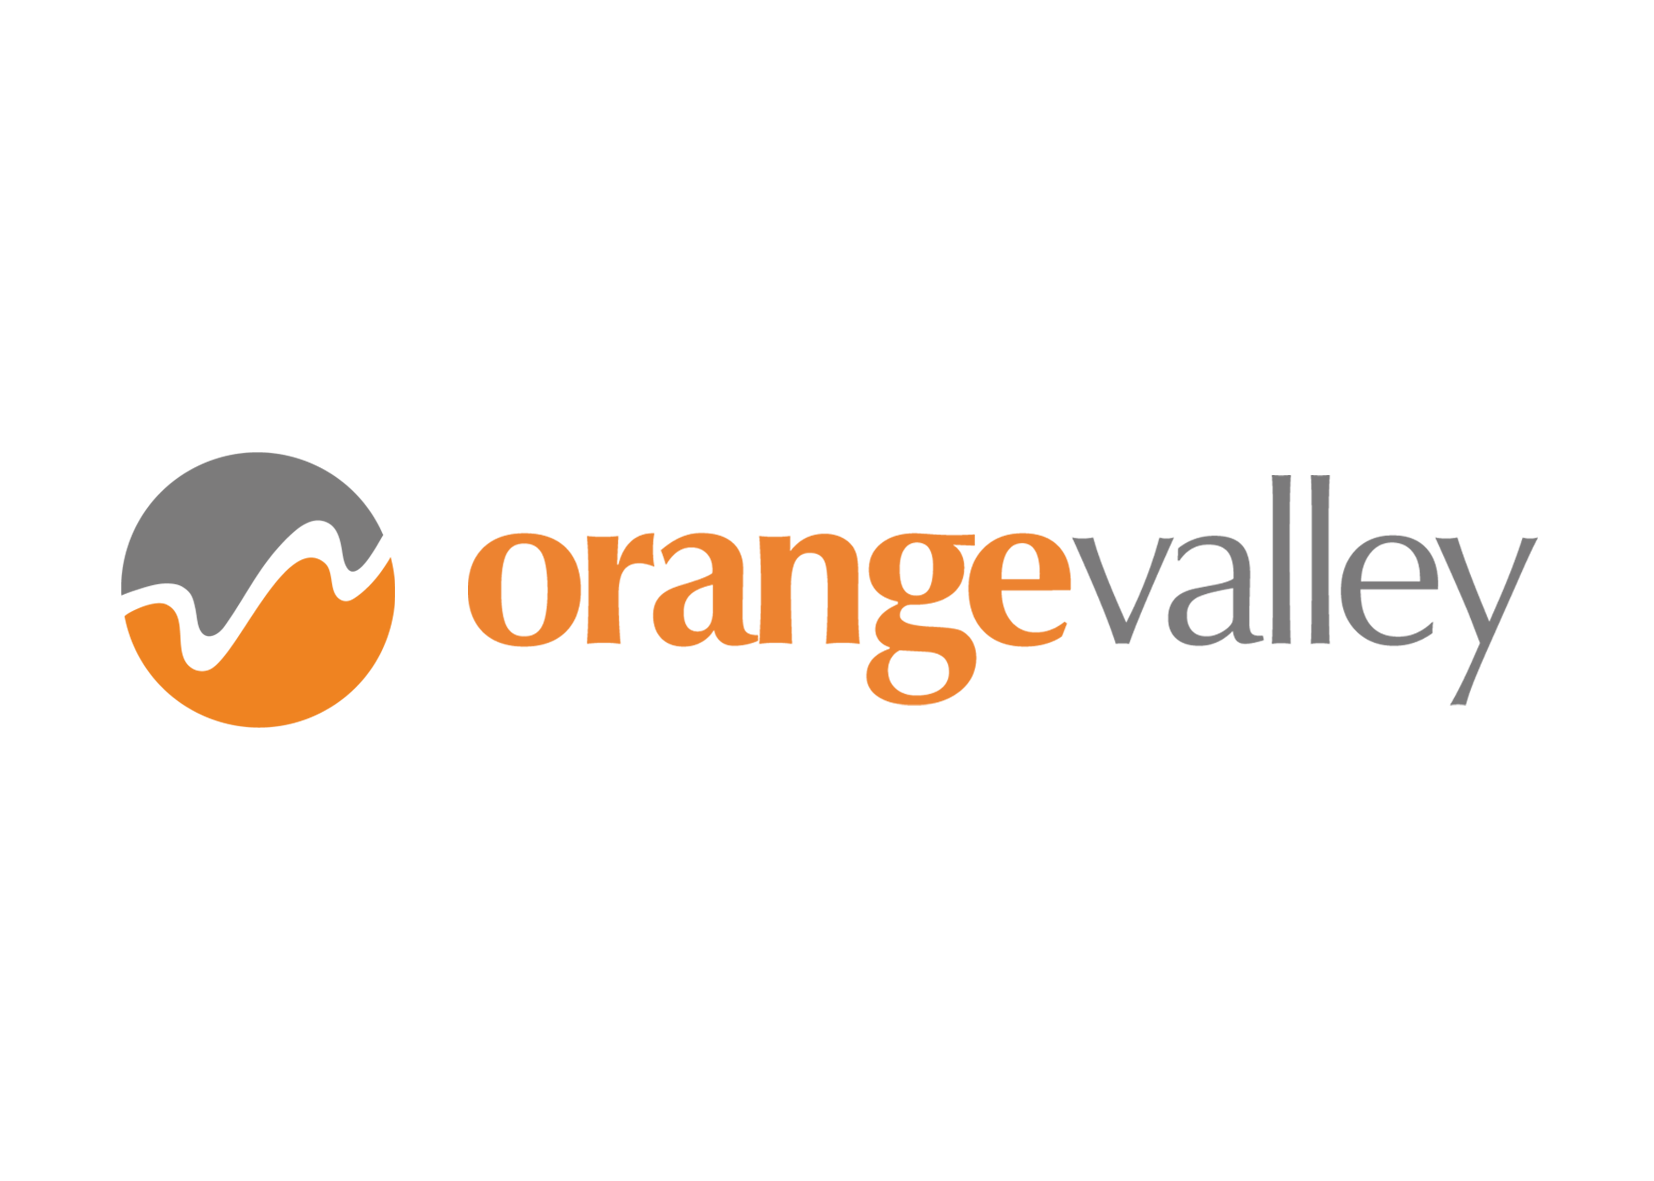 OrangeValley